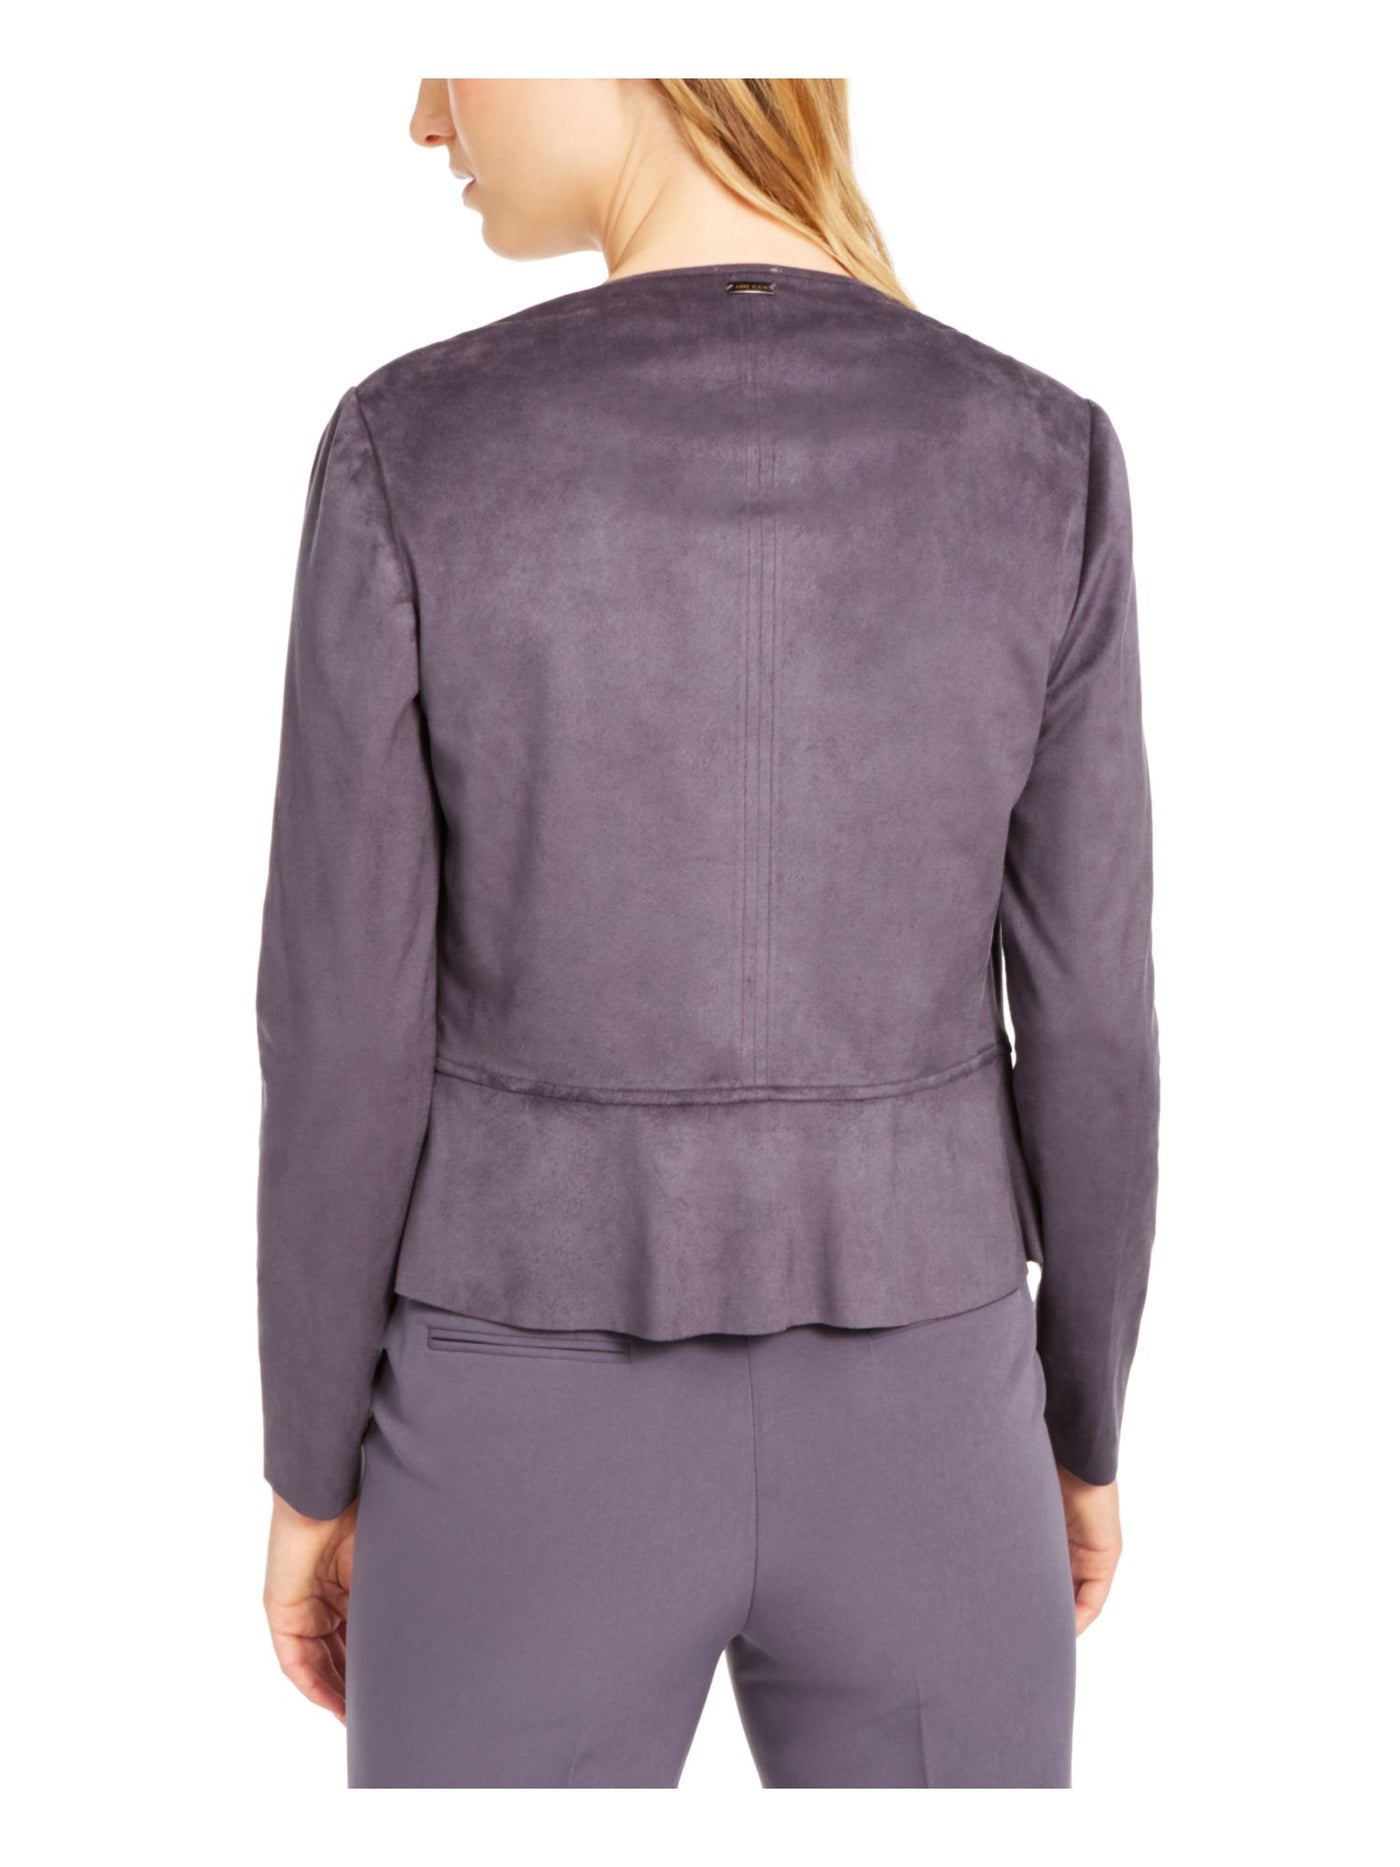 ANNE KLEIN Womens Long Sleeve Open Cardigan Sweater